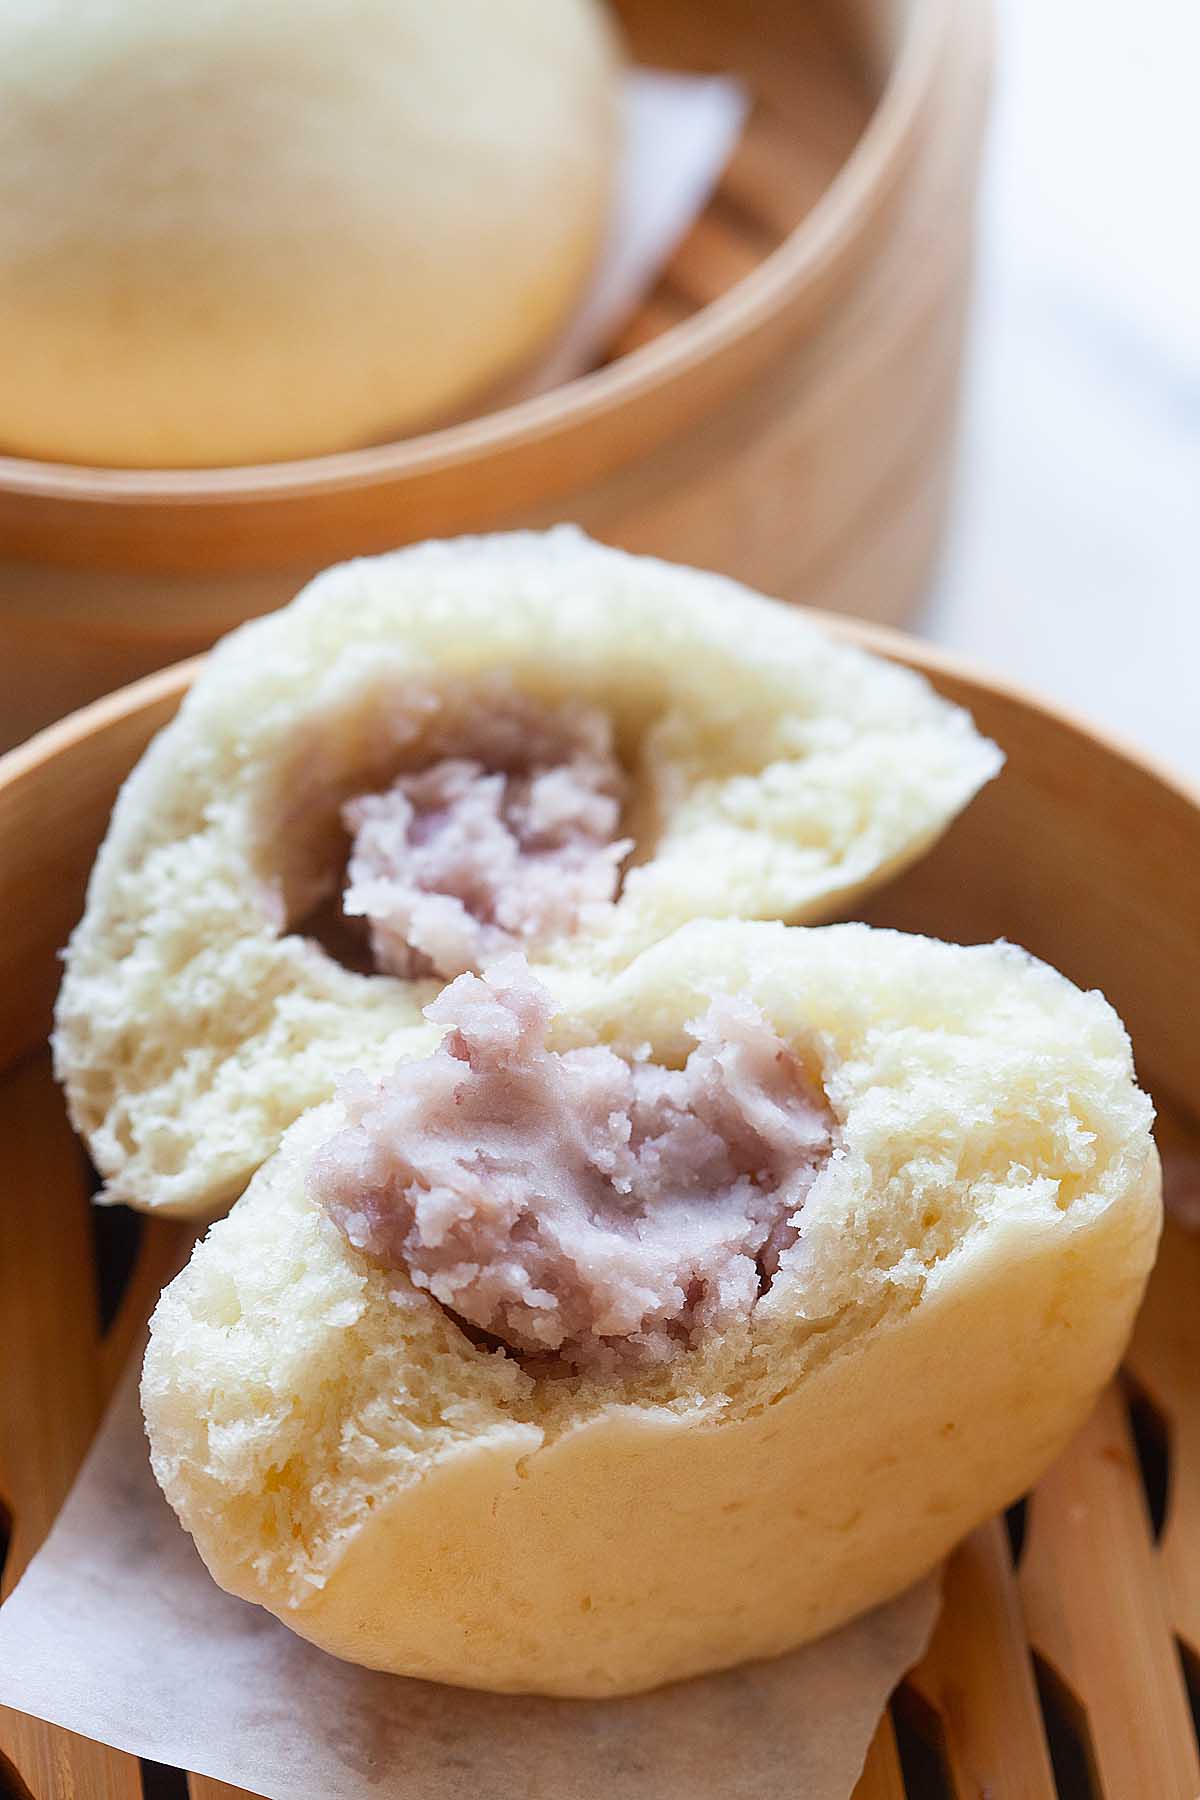 Taro bun recipe with sweet taro filling.